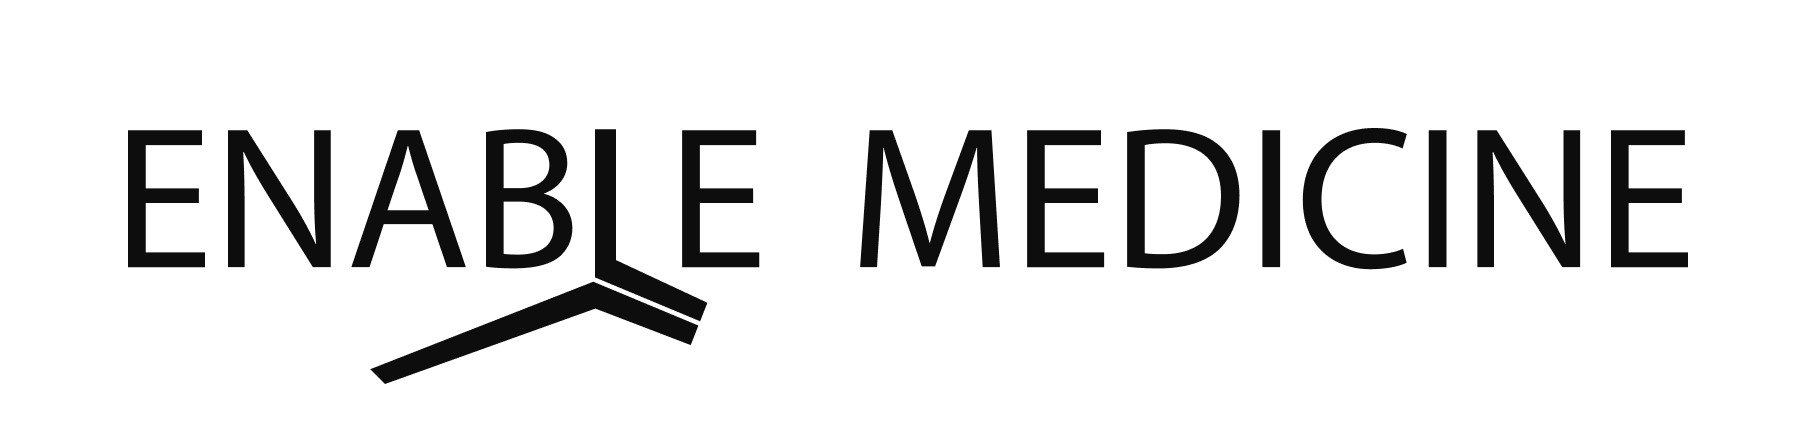 Enable Medicine Logo (PRNewsfoto/Enable Medicine)